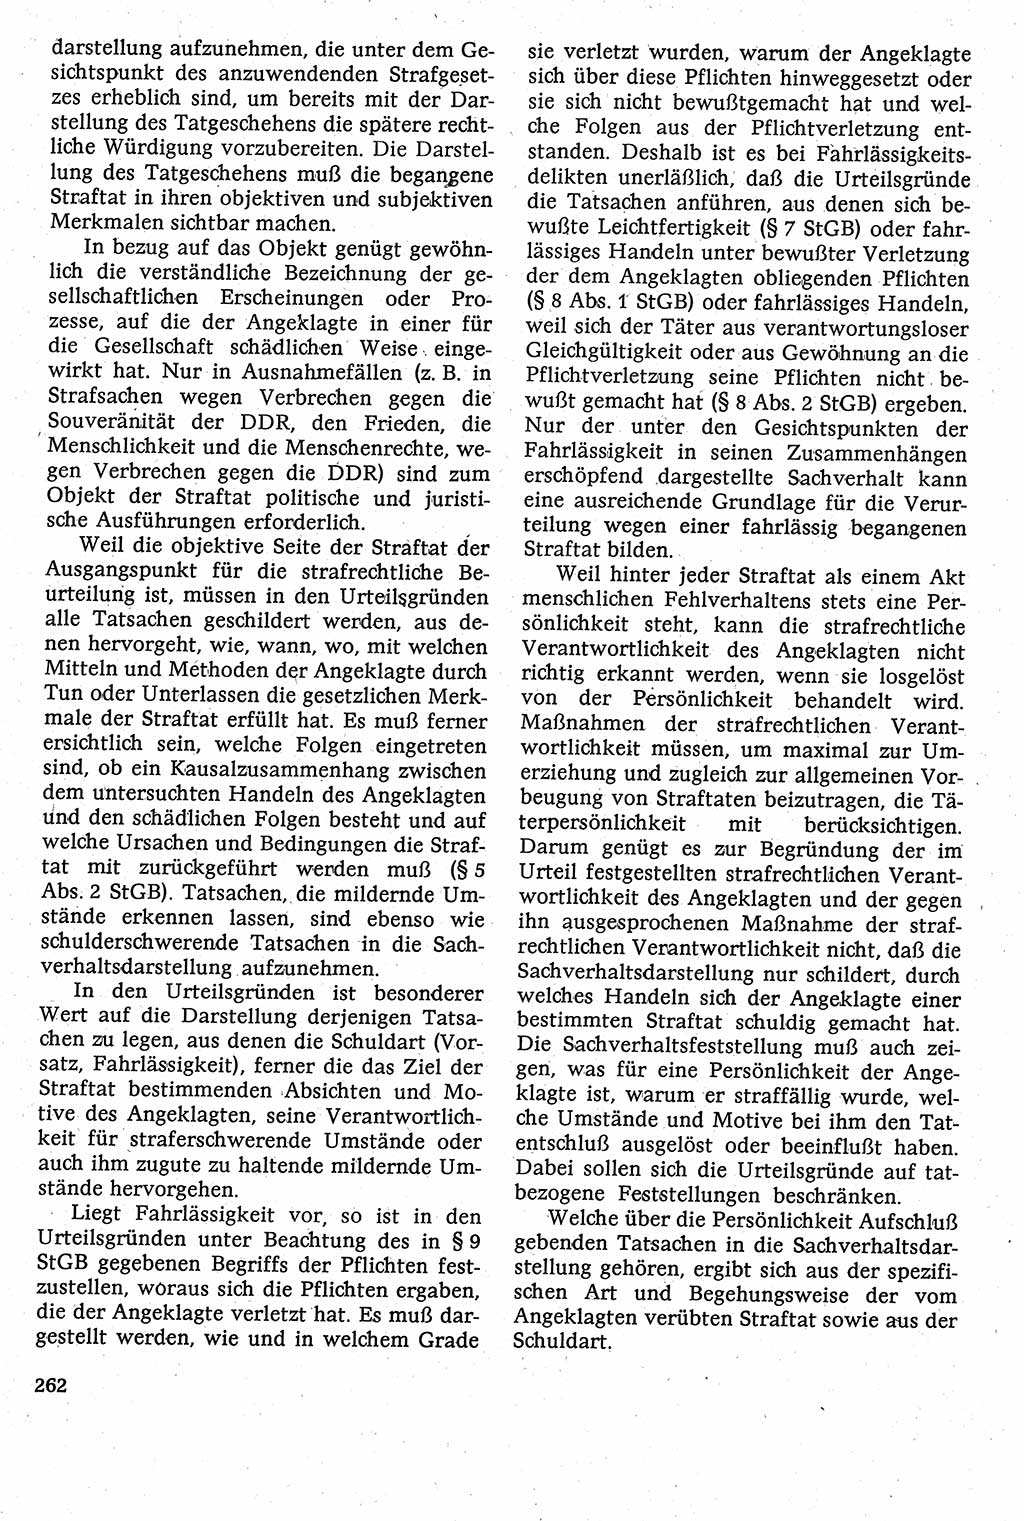 Strafverfahrensrecht [Deutsche Demokratische Republik (DDR)], Lehrbuch 1982, Seite 262 (Strafverf.-R. DDR Lb. 1982, S. 262)